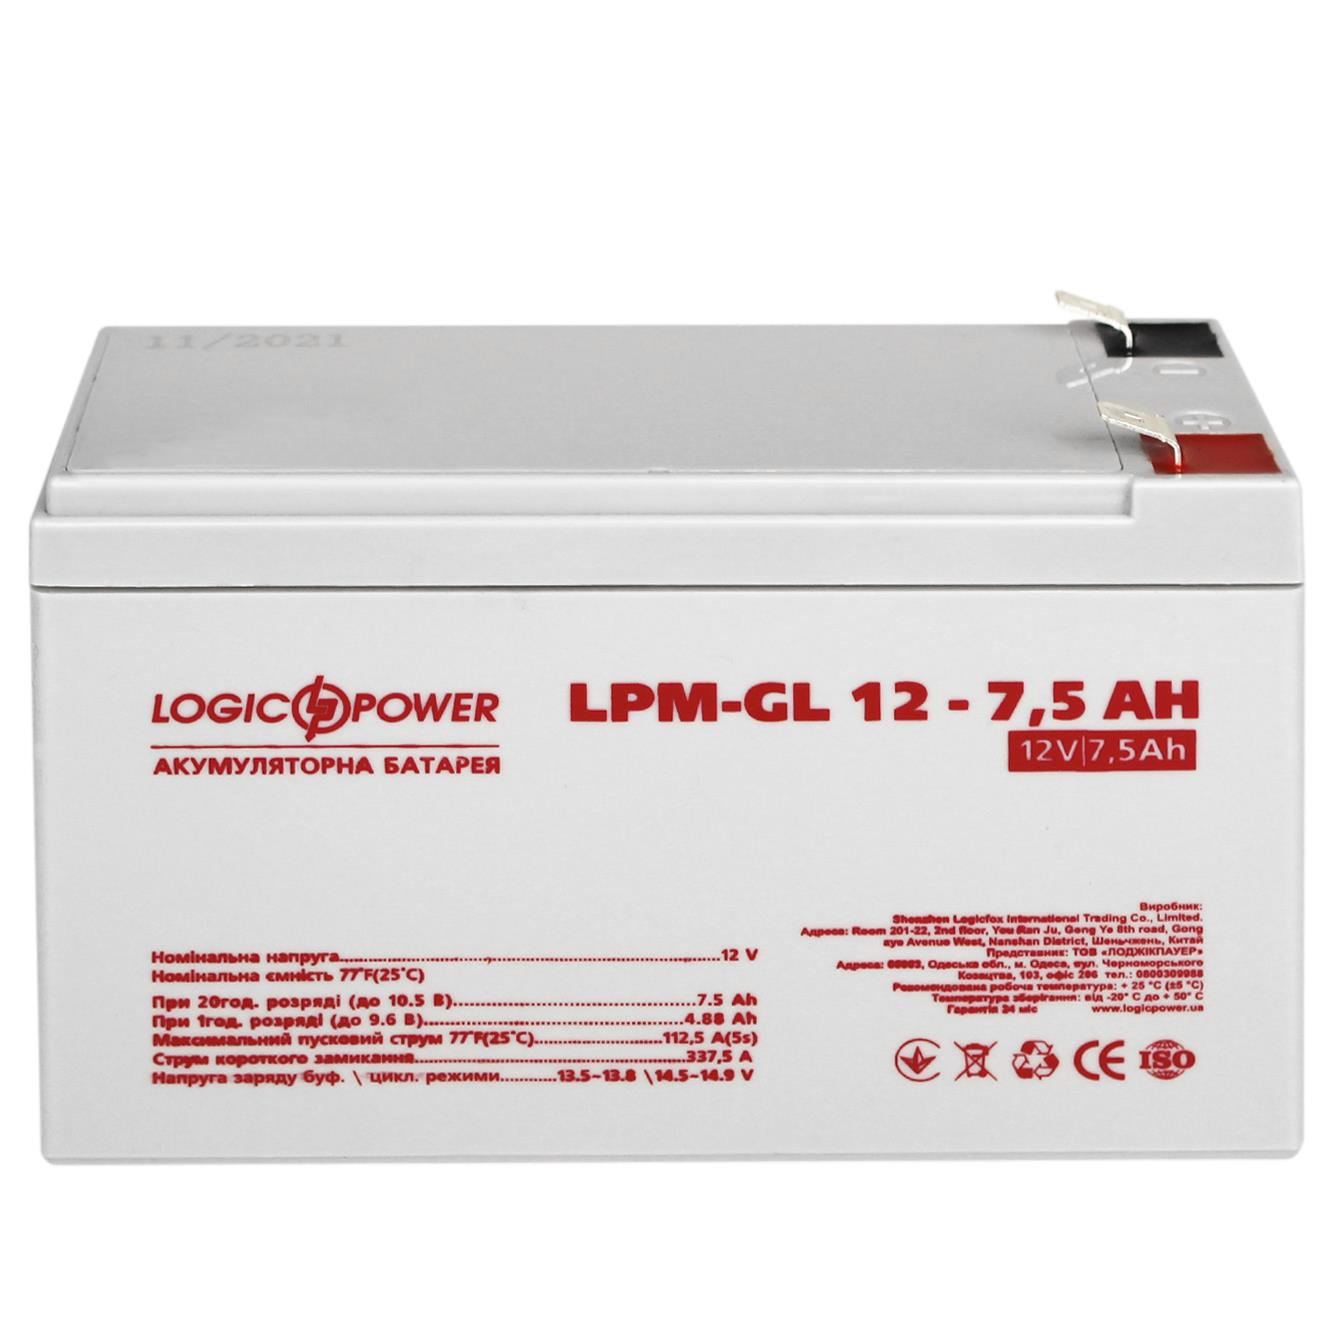 Аккумулятор гелевый LogicPower LPM-GL 12V - 7.5 Ah (6562) отзывы - изображения 5